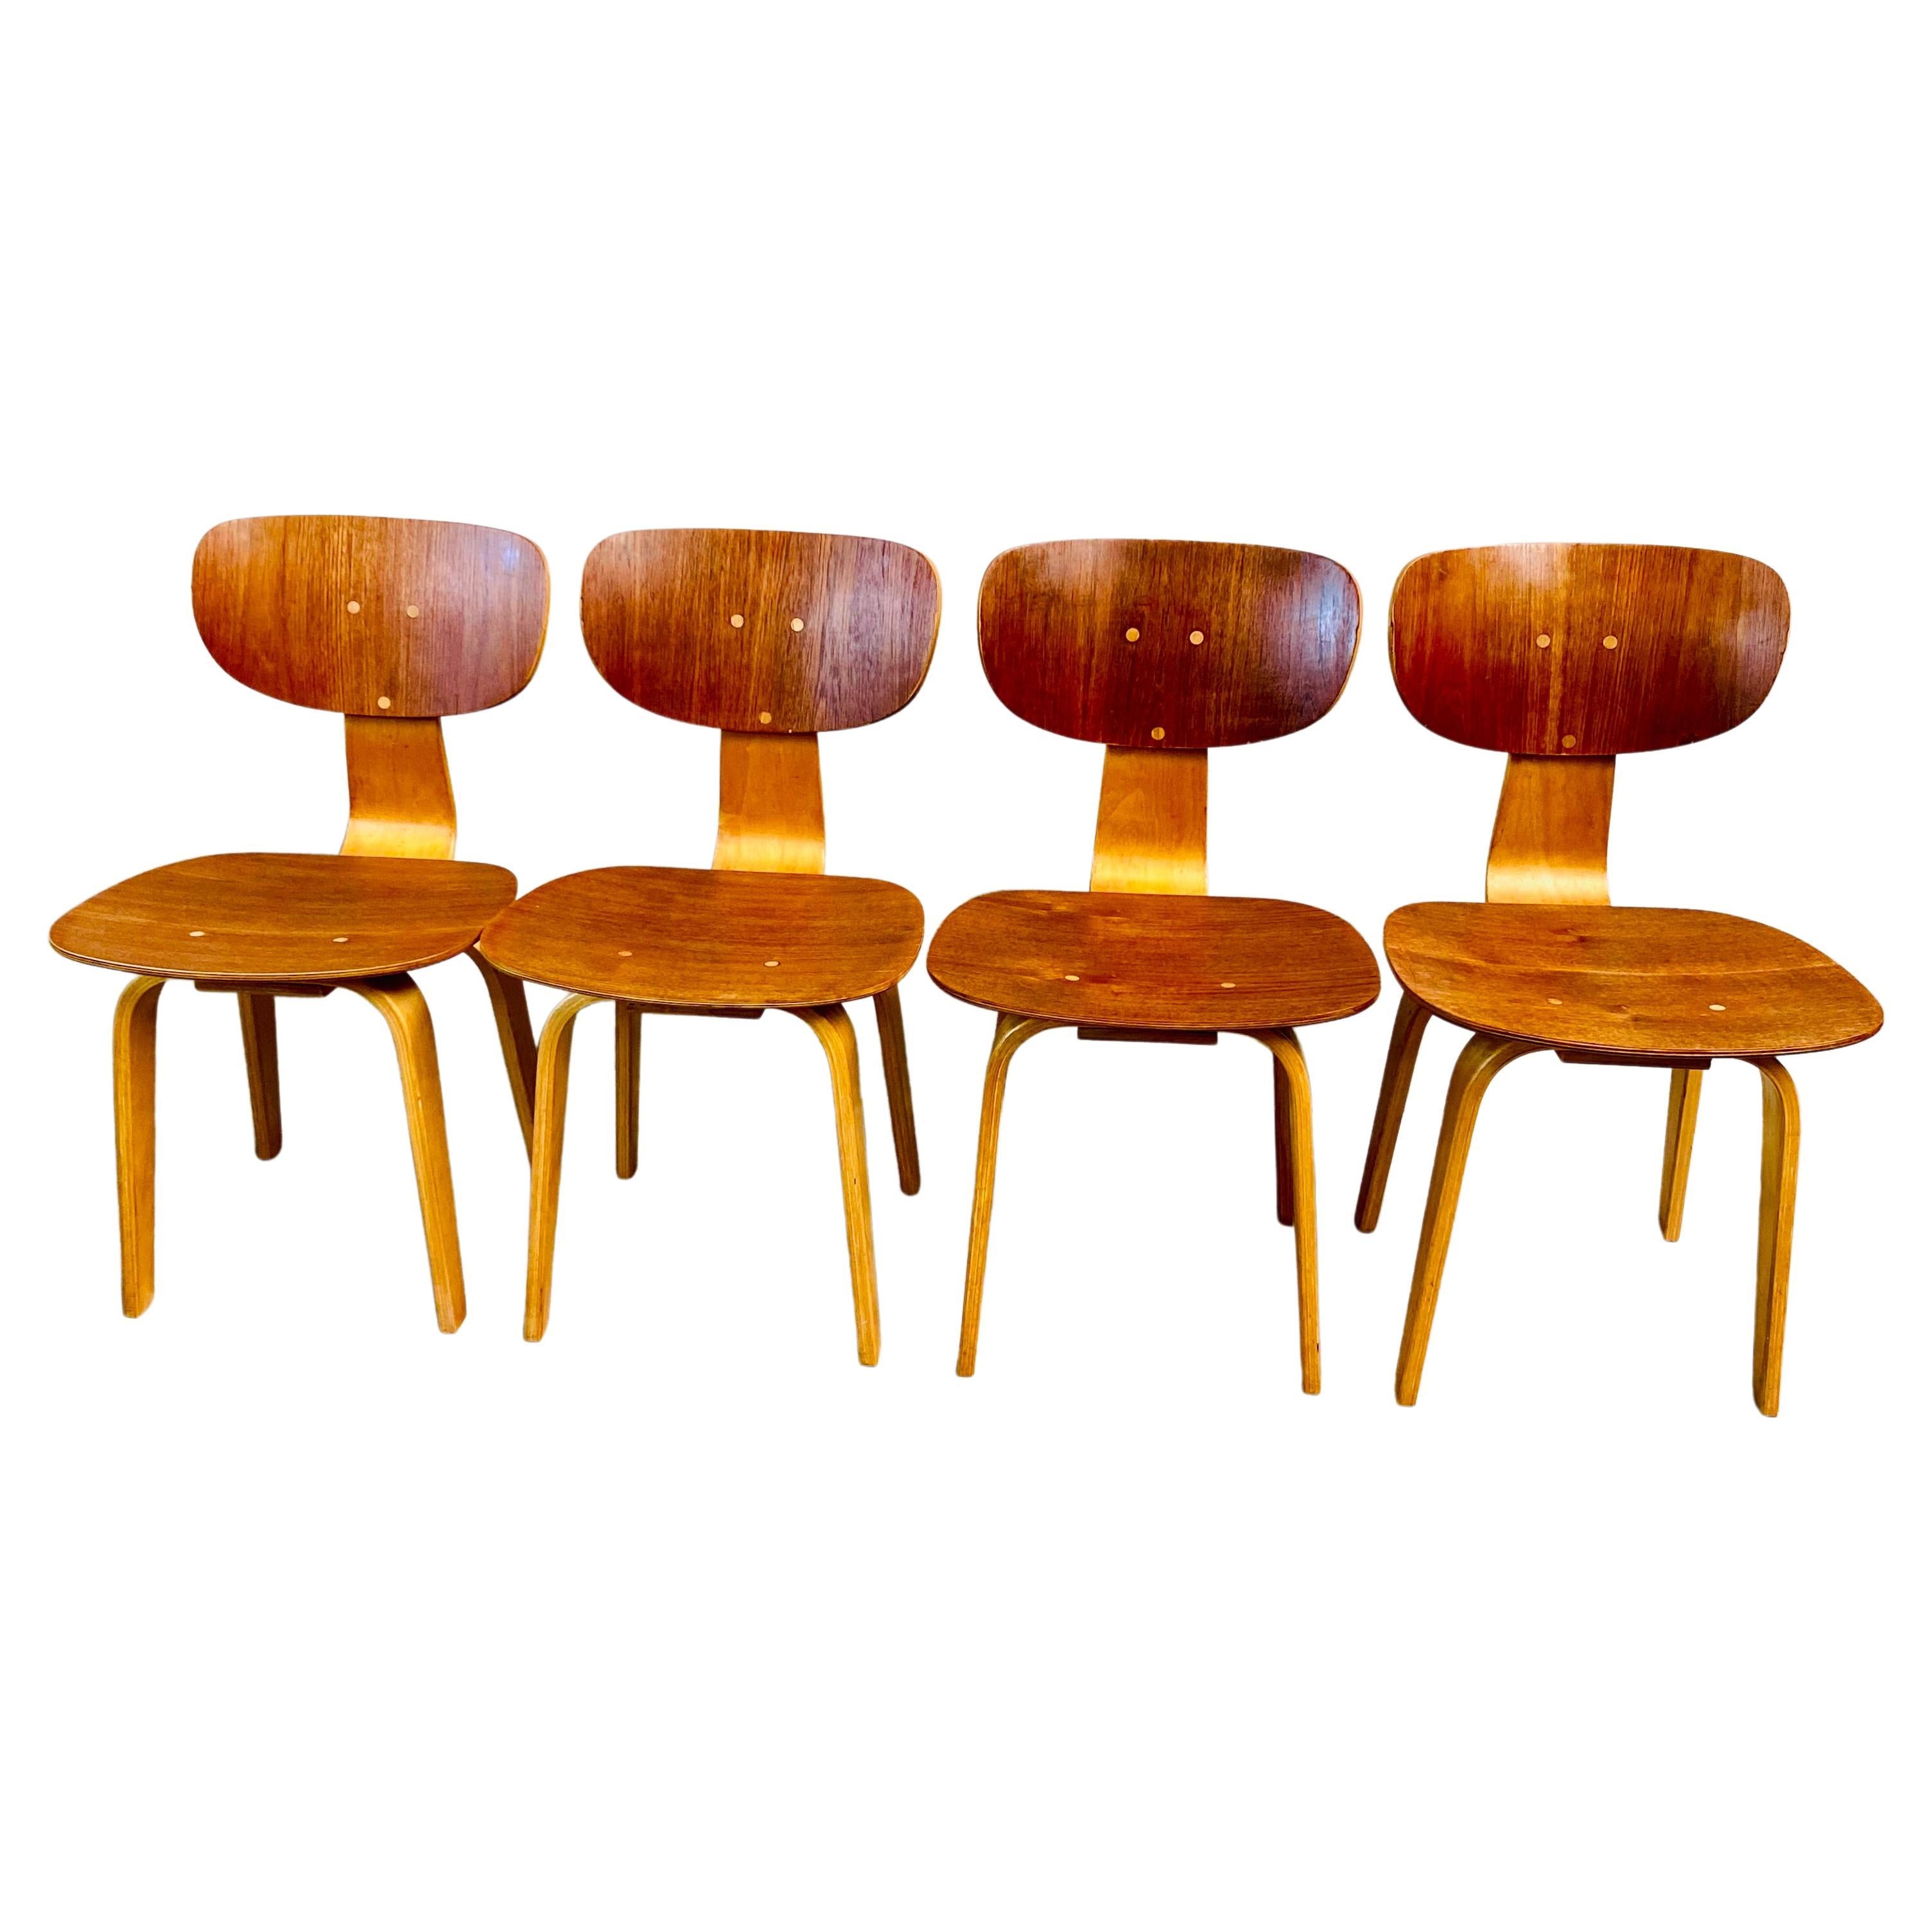 Elegance intemporelle : Chaises de salle à manger Pastoe SB02 du milieu du siècle par Cees Braakman

Replongez dans l'âge d'or du design avec notre exquise collection de chaises de salle à manger Pastoe SB02 du milieu du siècle, méticuleusement